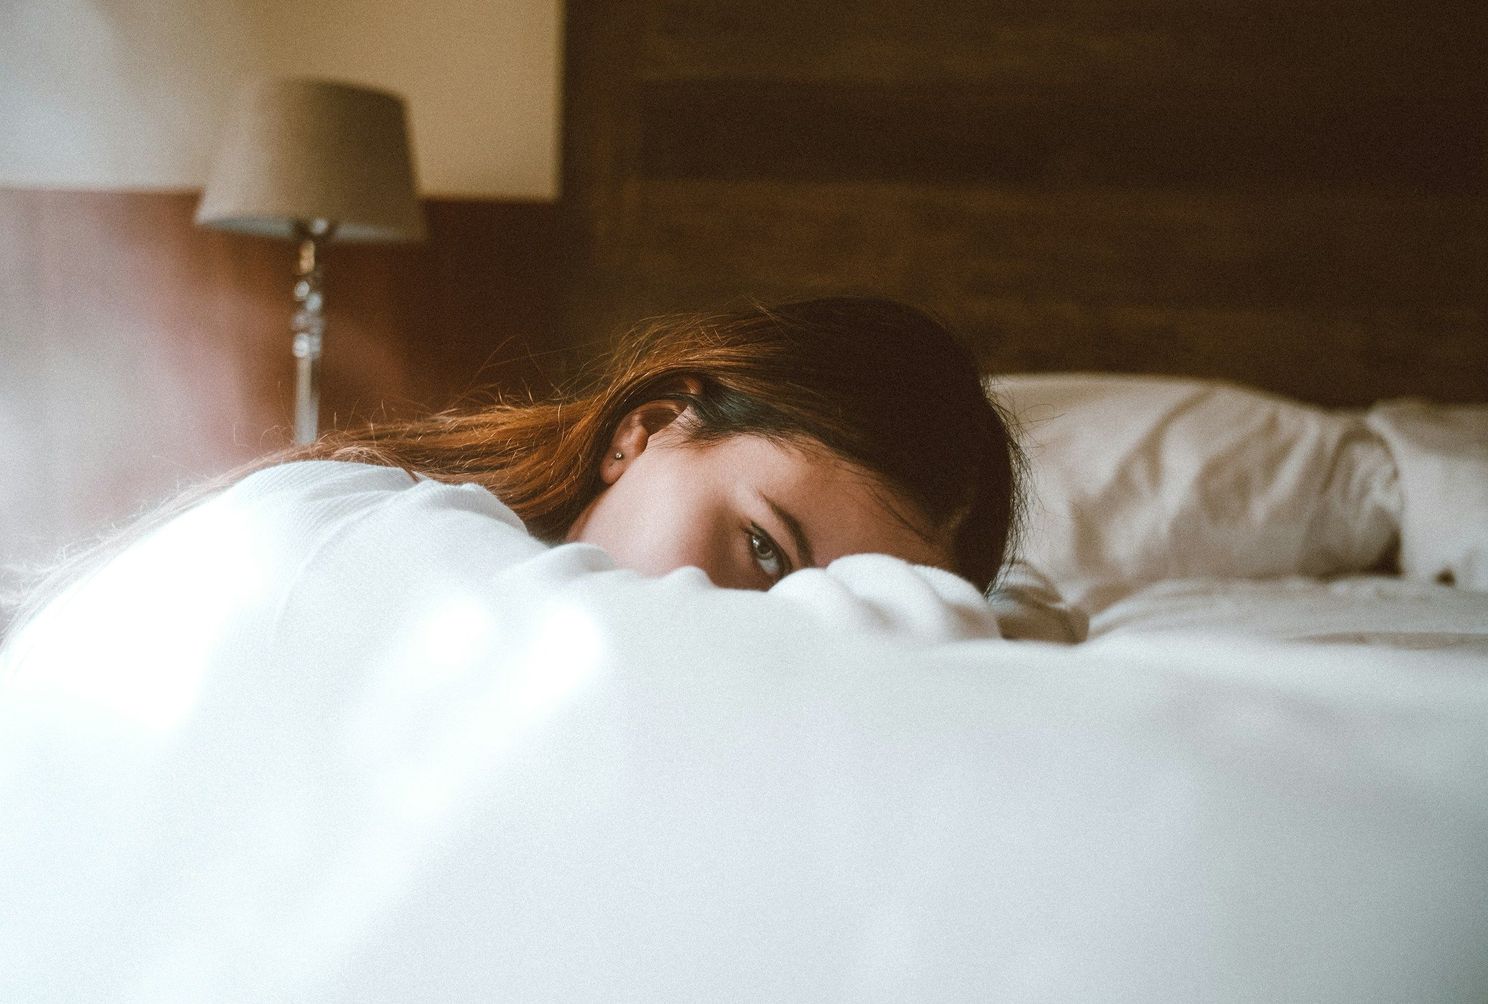 Vrouwen bereiken in bed steeds minder een hoogtepunt, en experts zien één grote reden